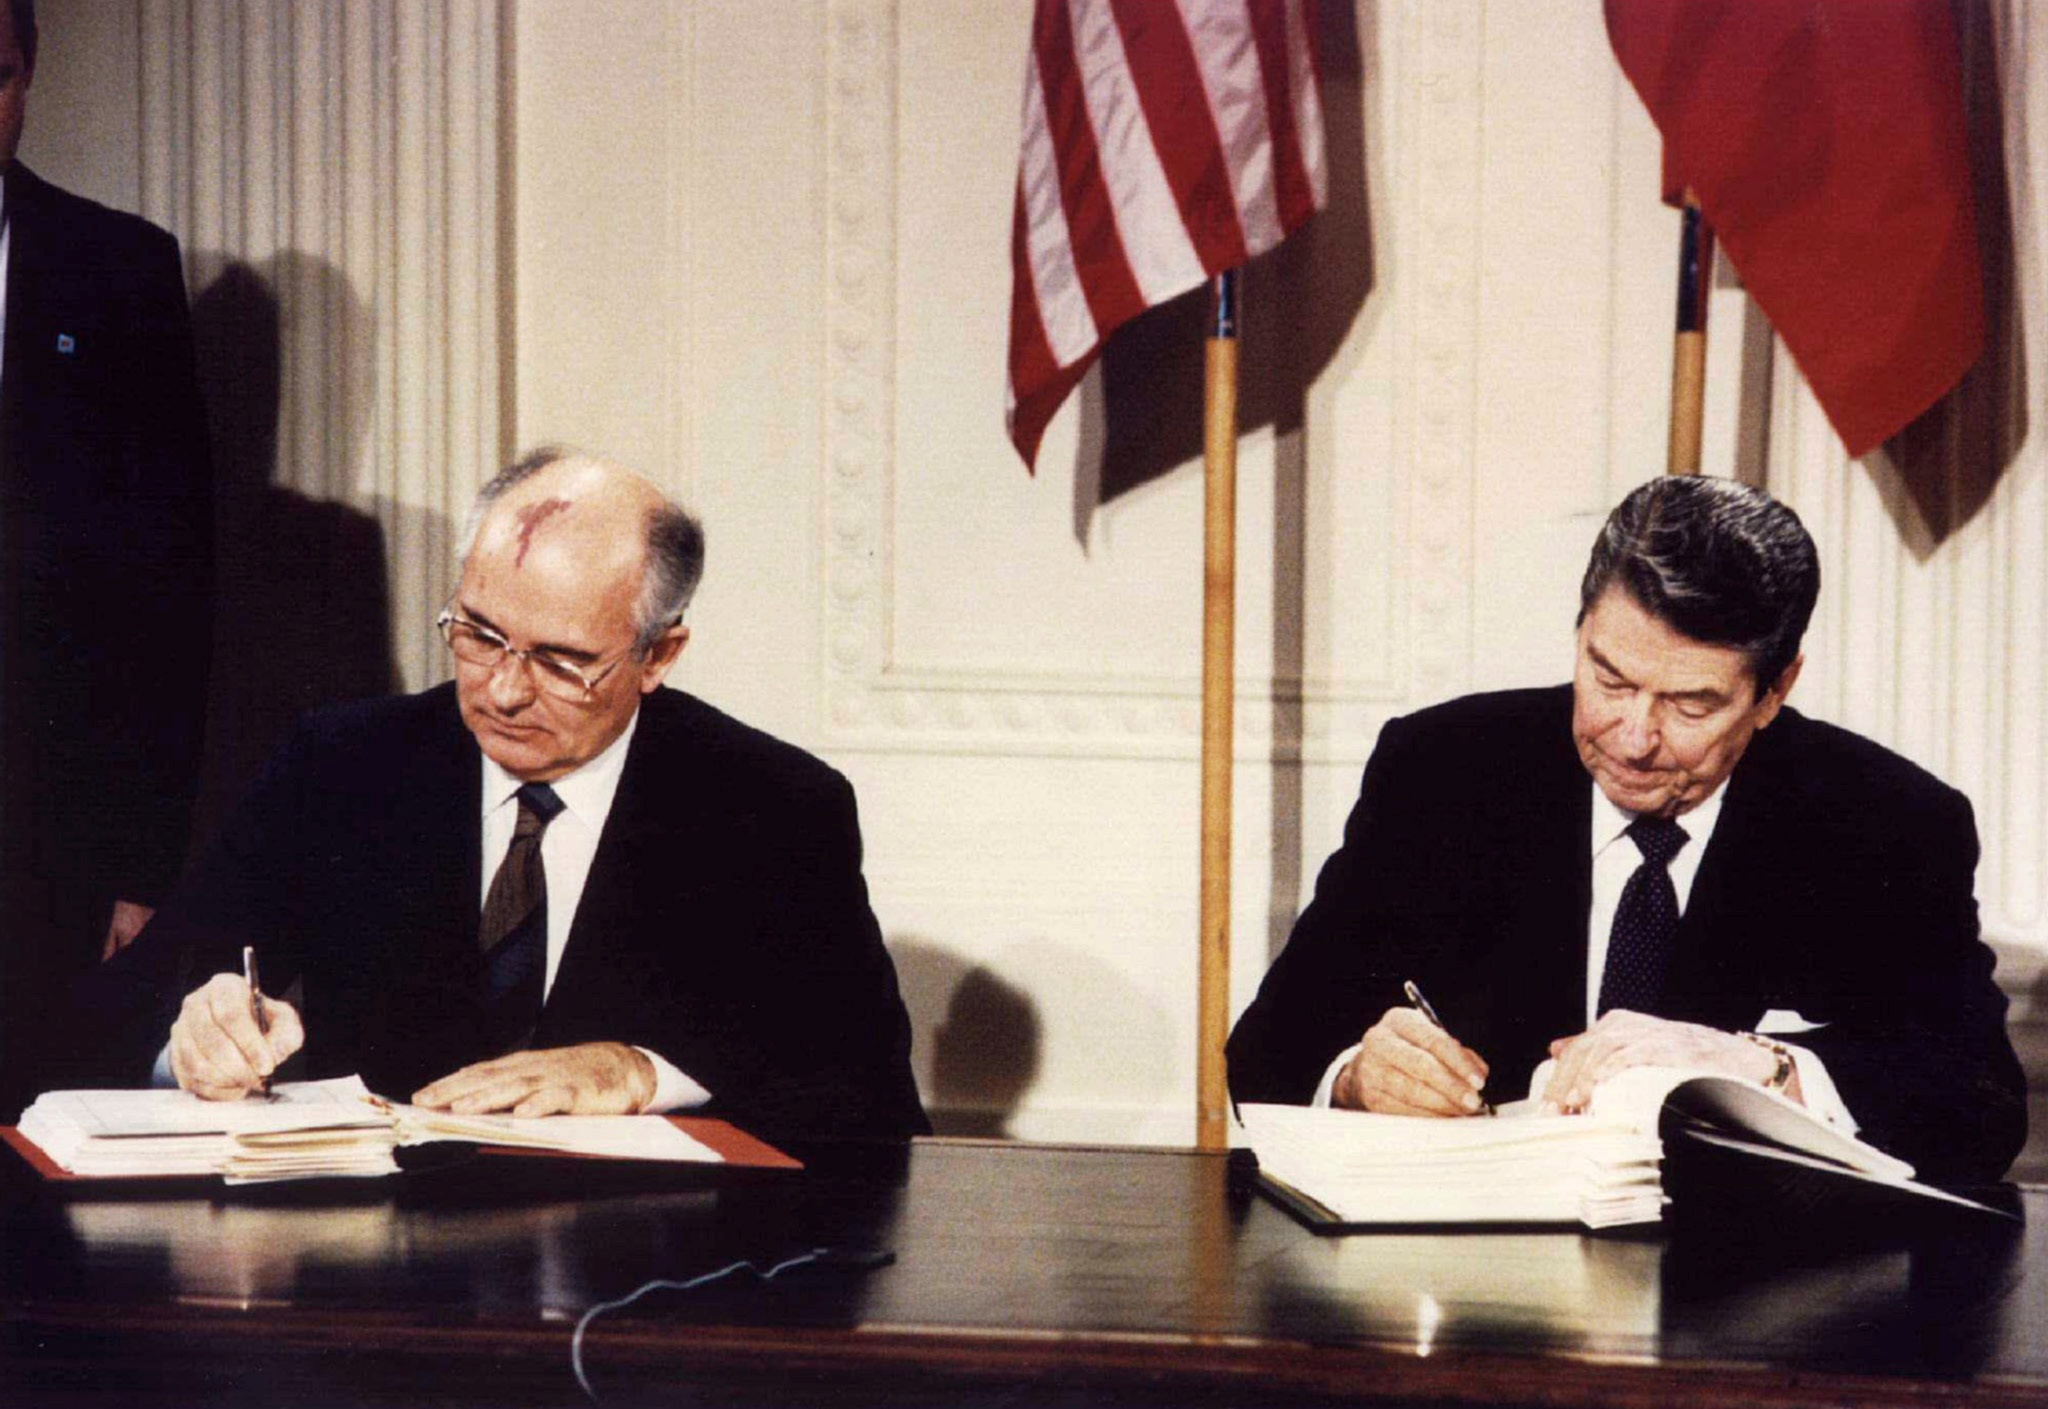 gorbachev-reagan-inf-treaty001.jpg